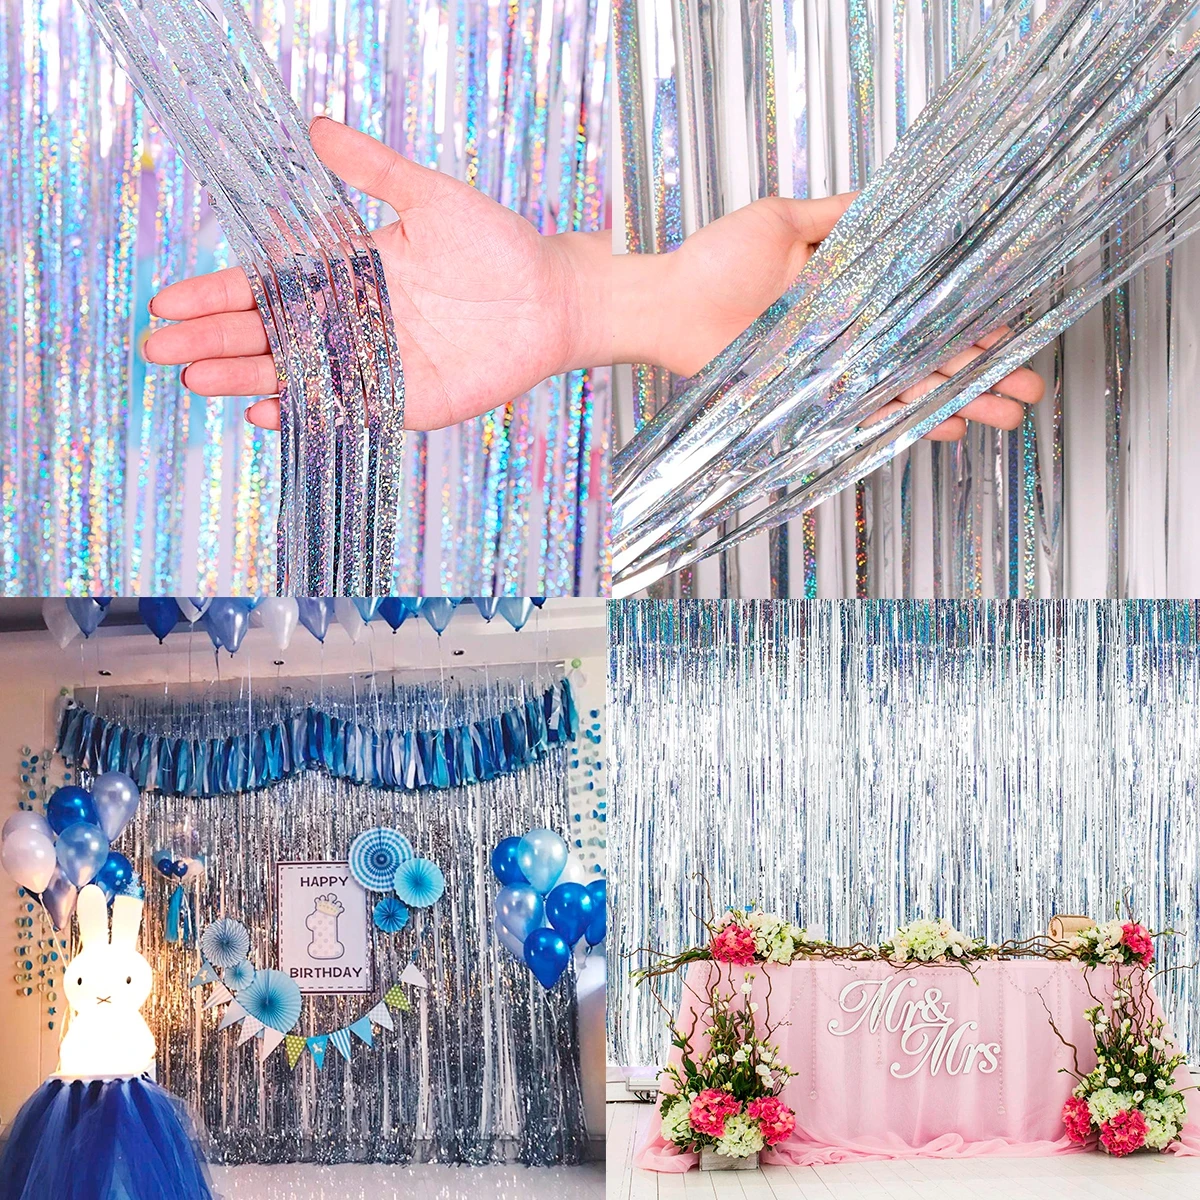 QIFU счастливый фон на день рождения фотография розовая стена свадьба фон для фотографии ребенок душ товары для девичника